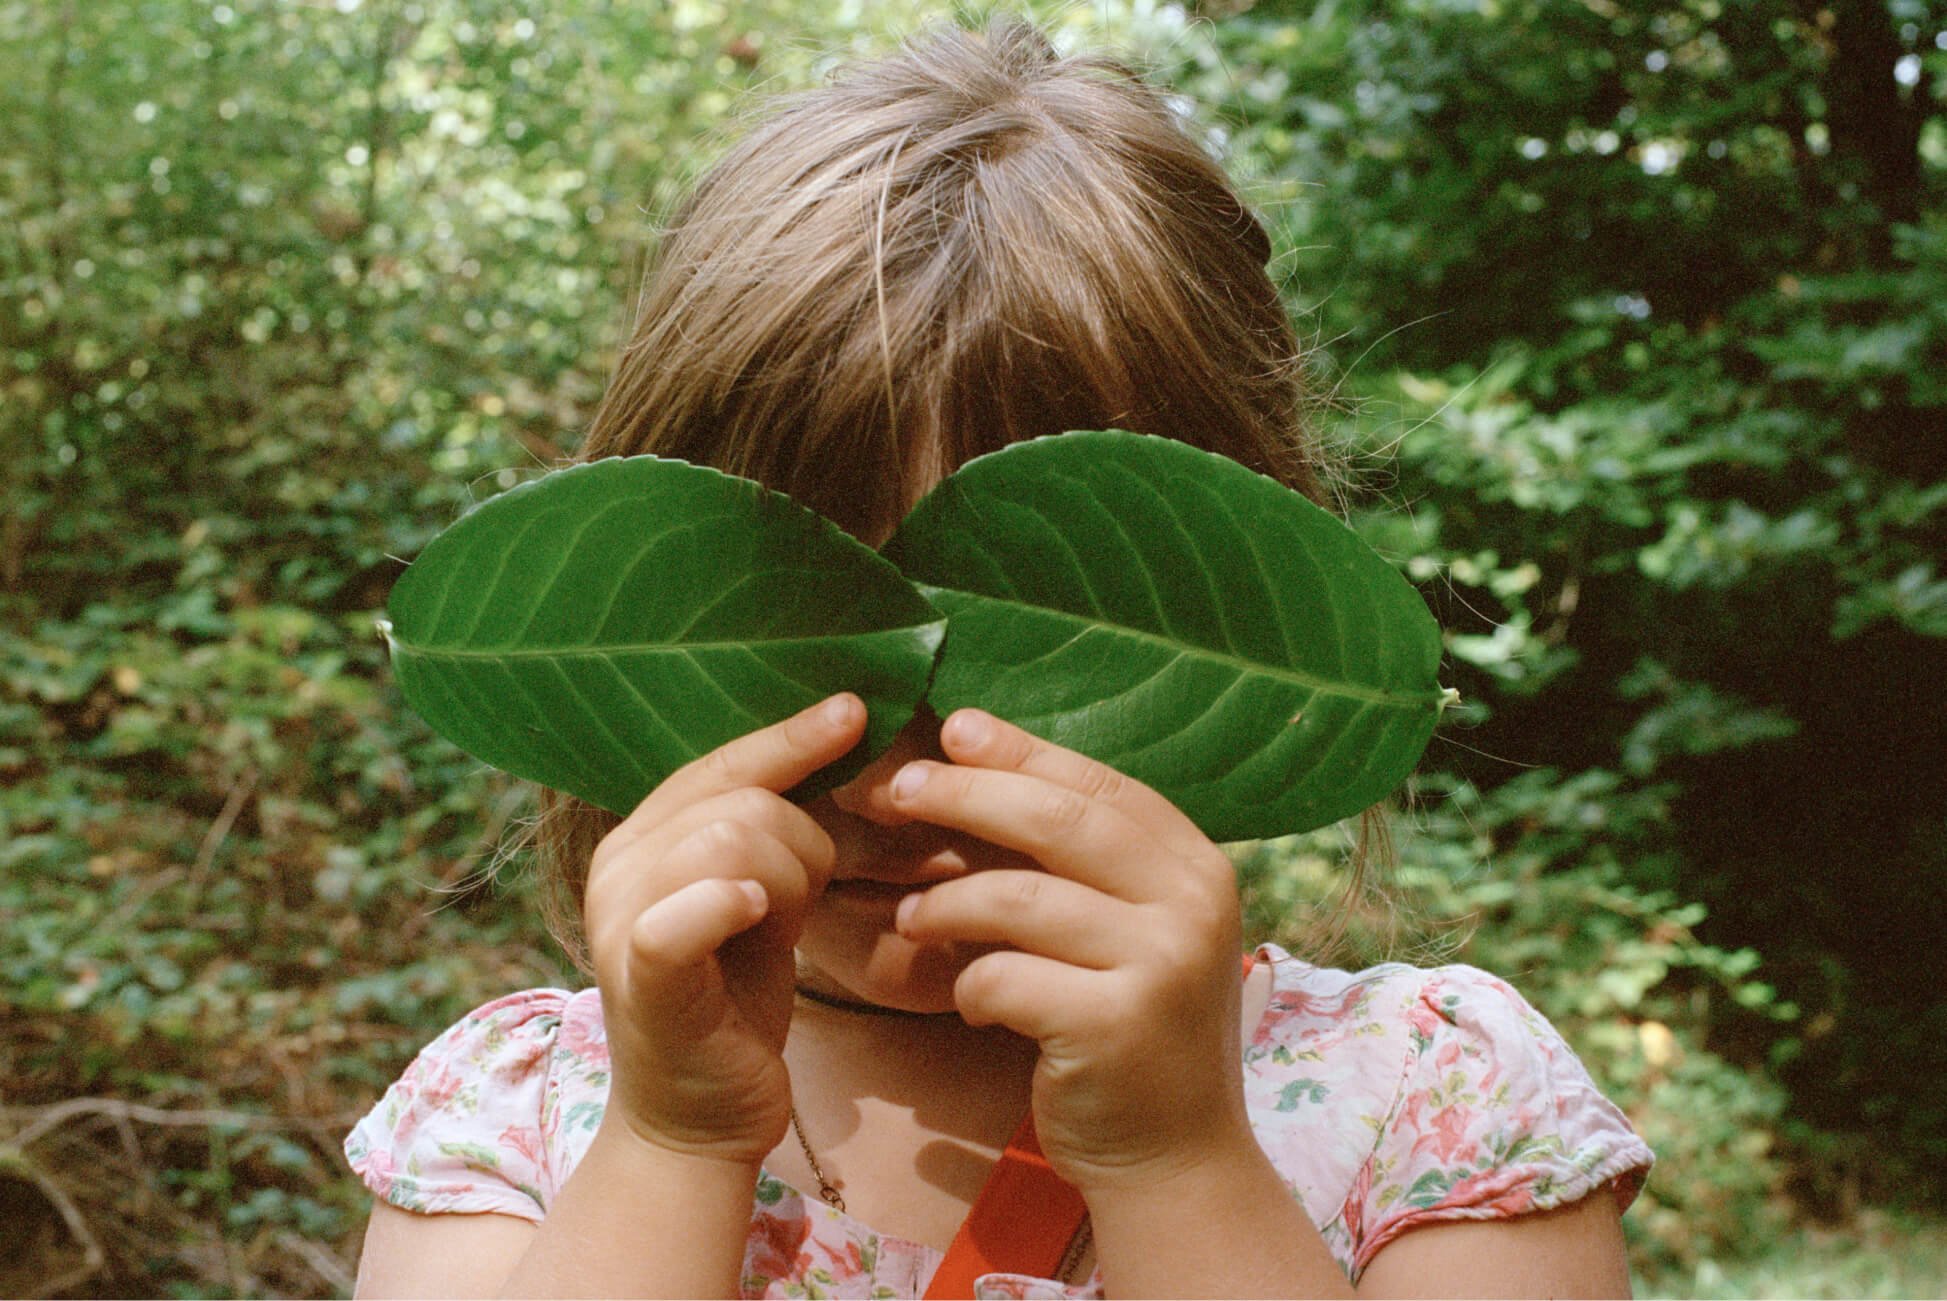 Uma garota em uma área arborizada cobre ambos os olhos com folhas grandes.